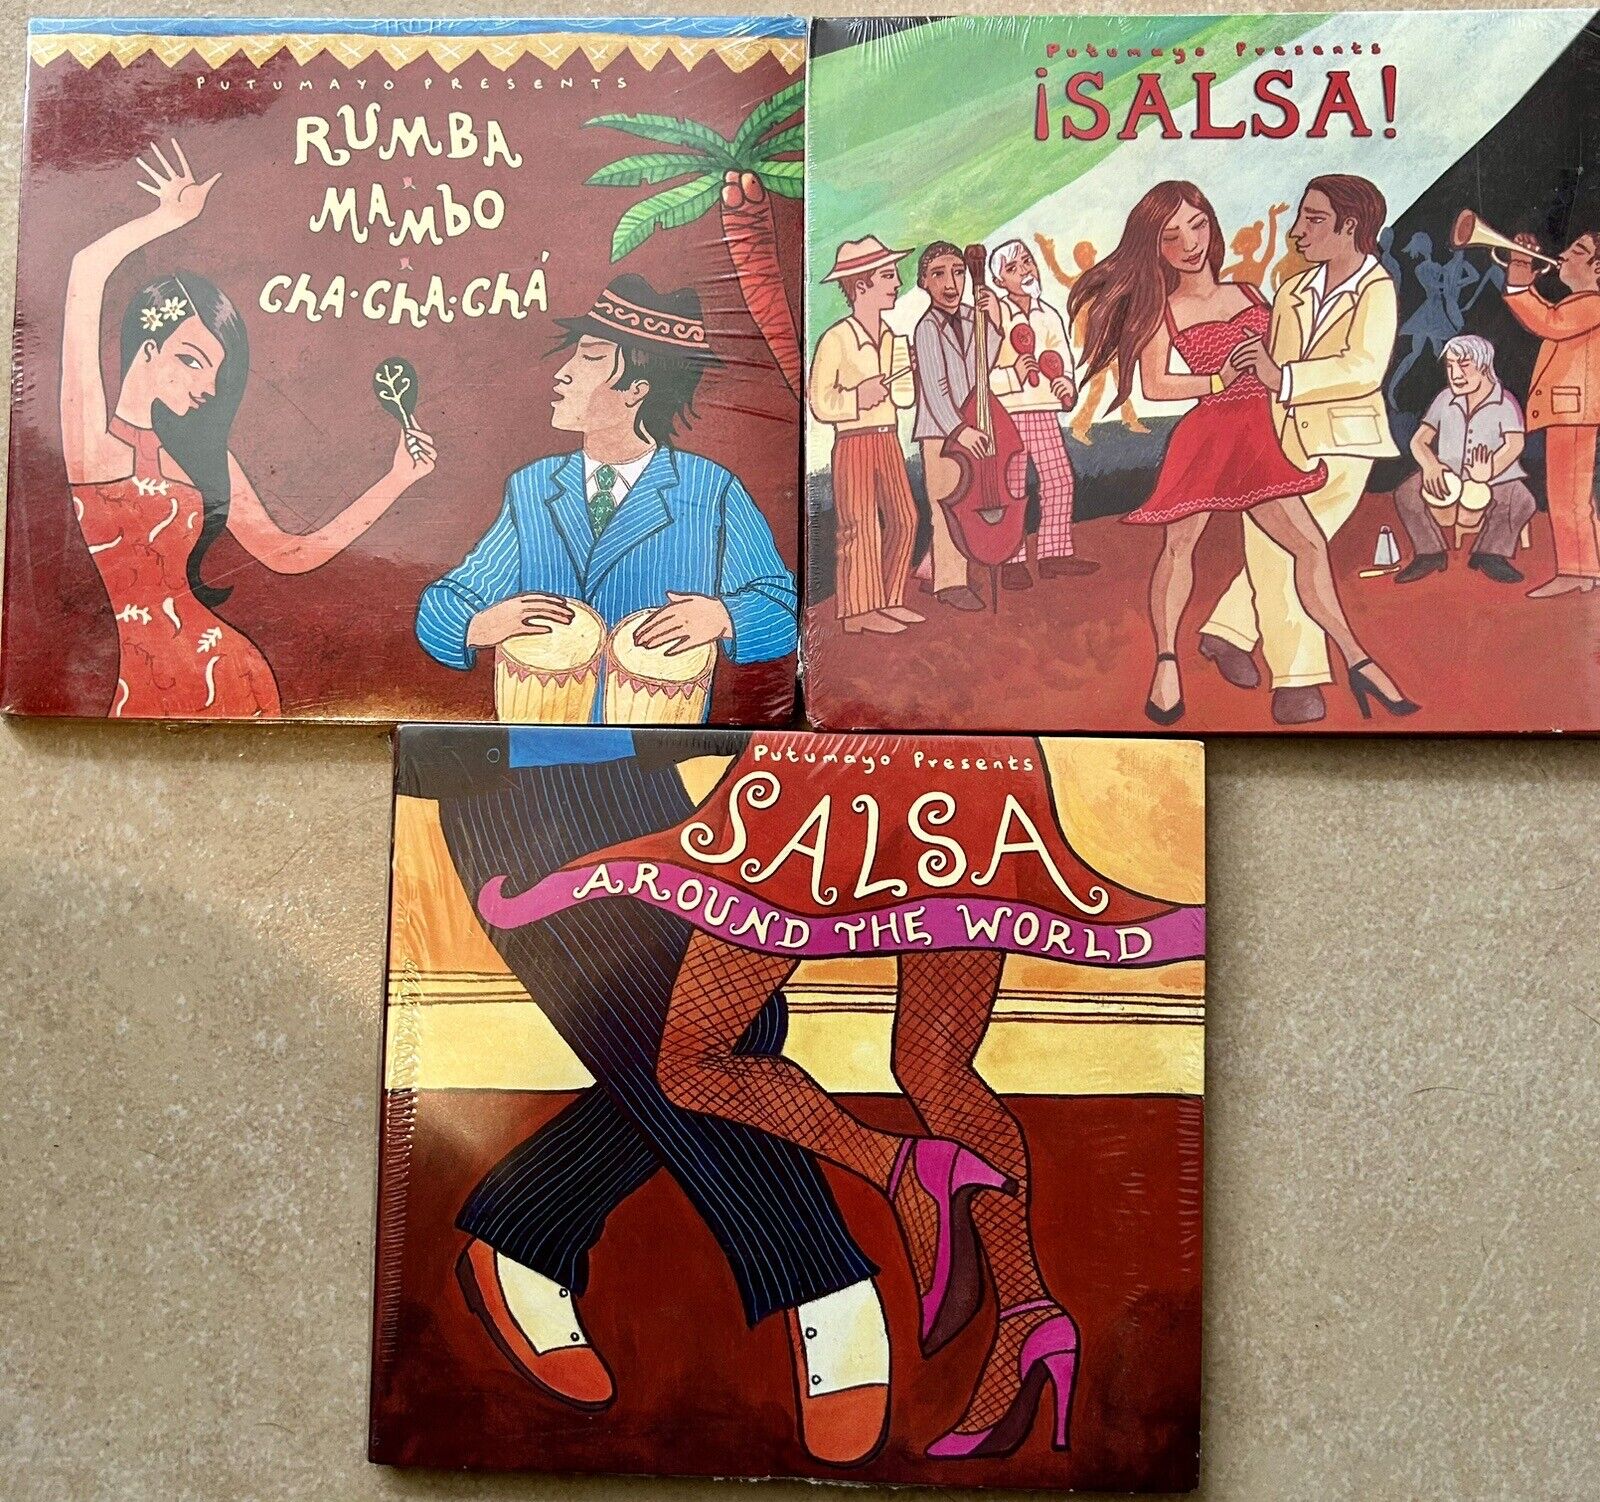  Putumayo Presents Salsa Around The World /Salsa/Rumba Mambo 3 Cd Albums * NEW *